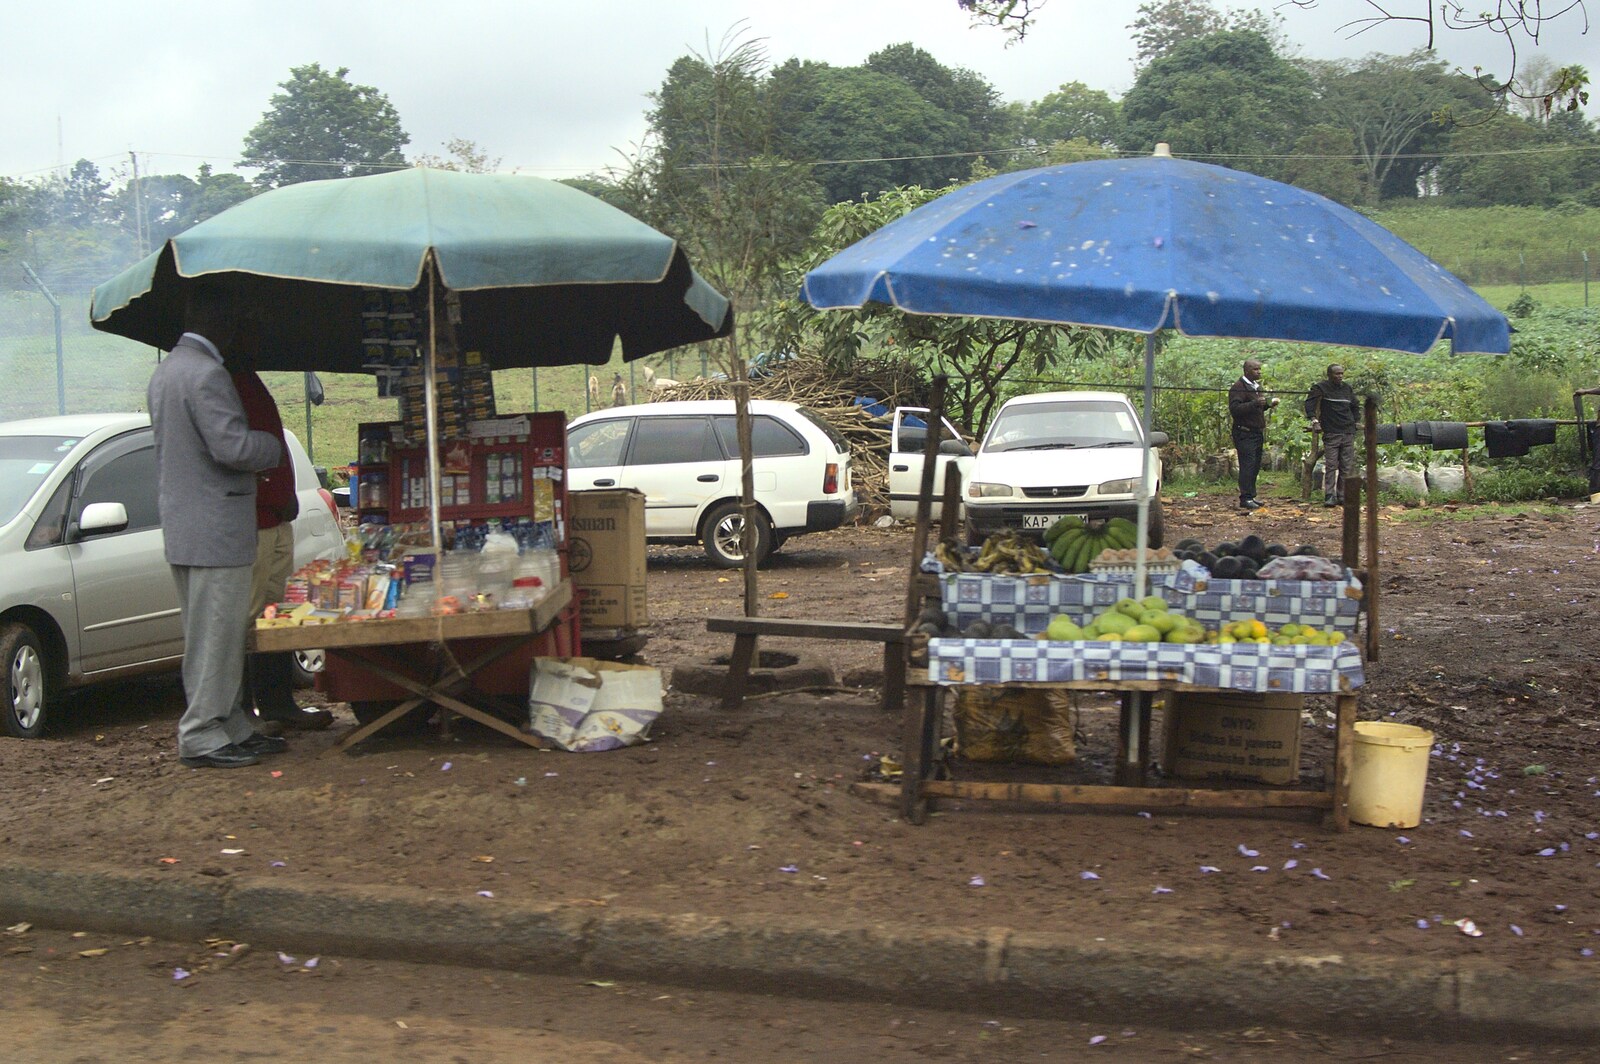 Roadside stalls on Limuru Road from Nairobi and the Road to Maasai Mara, Kenya, Africa - 1st November 2010